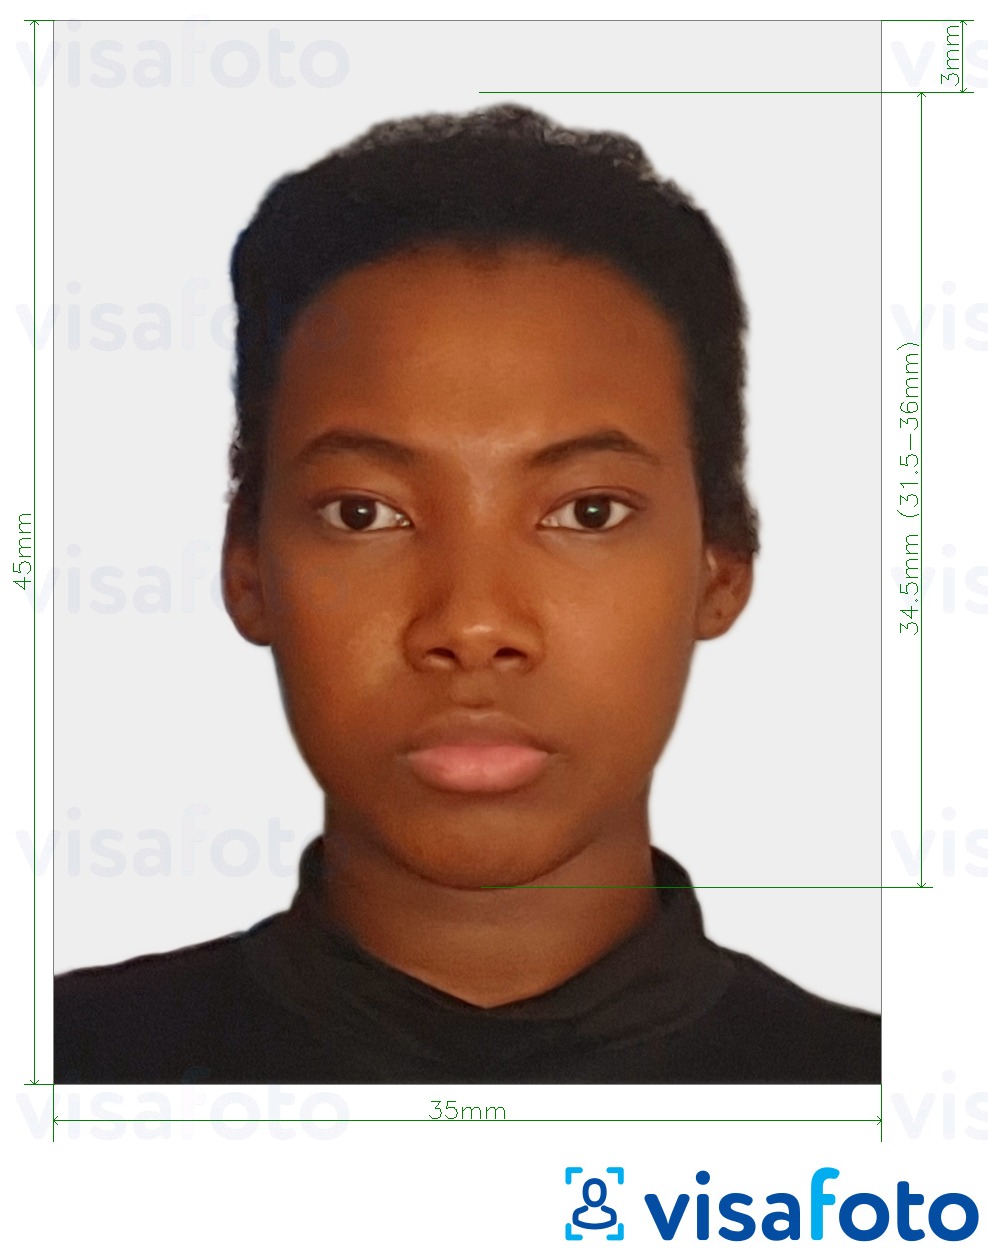 Shembulli i fotos per Pasaporta Togo 4.5x3.5 cm (45x35mm) me specifikimet ekzakte